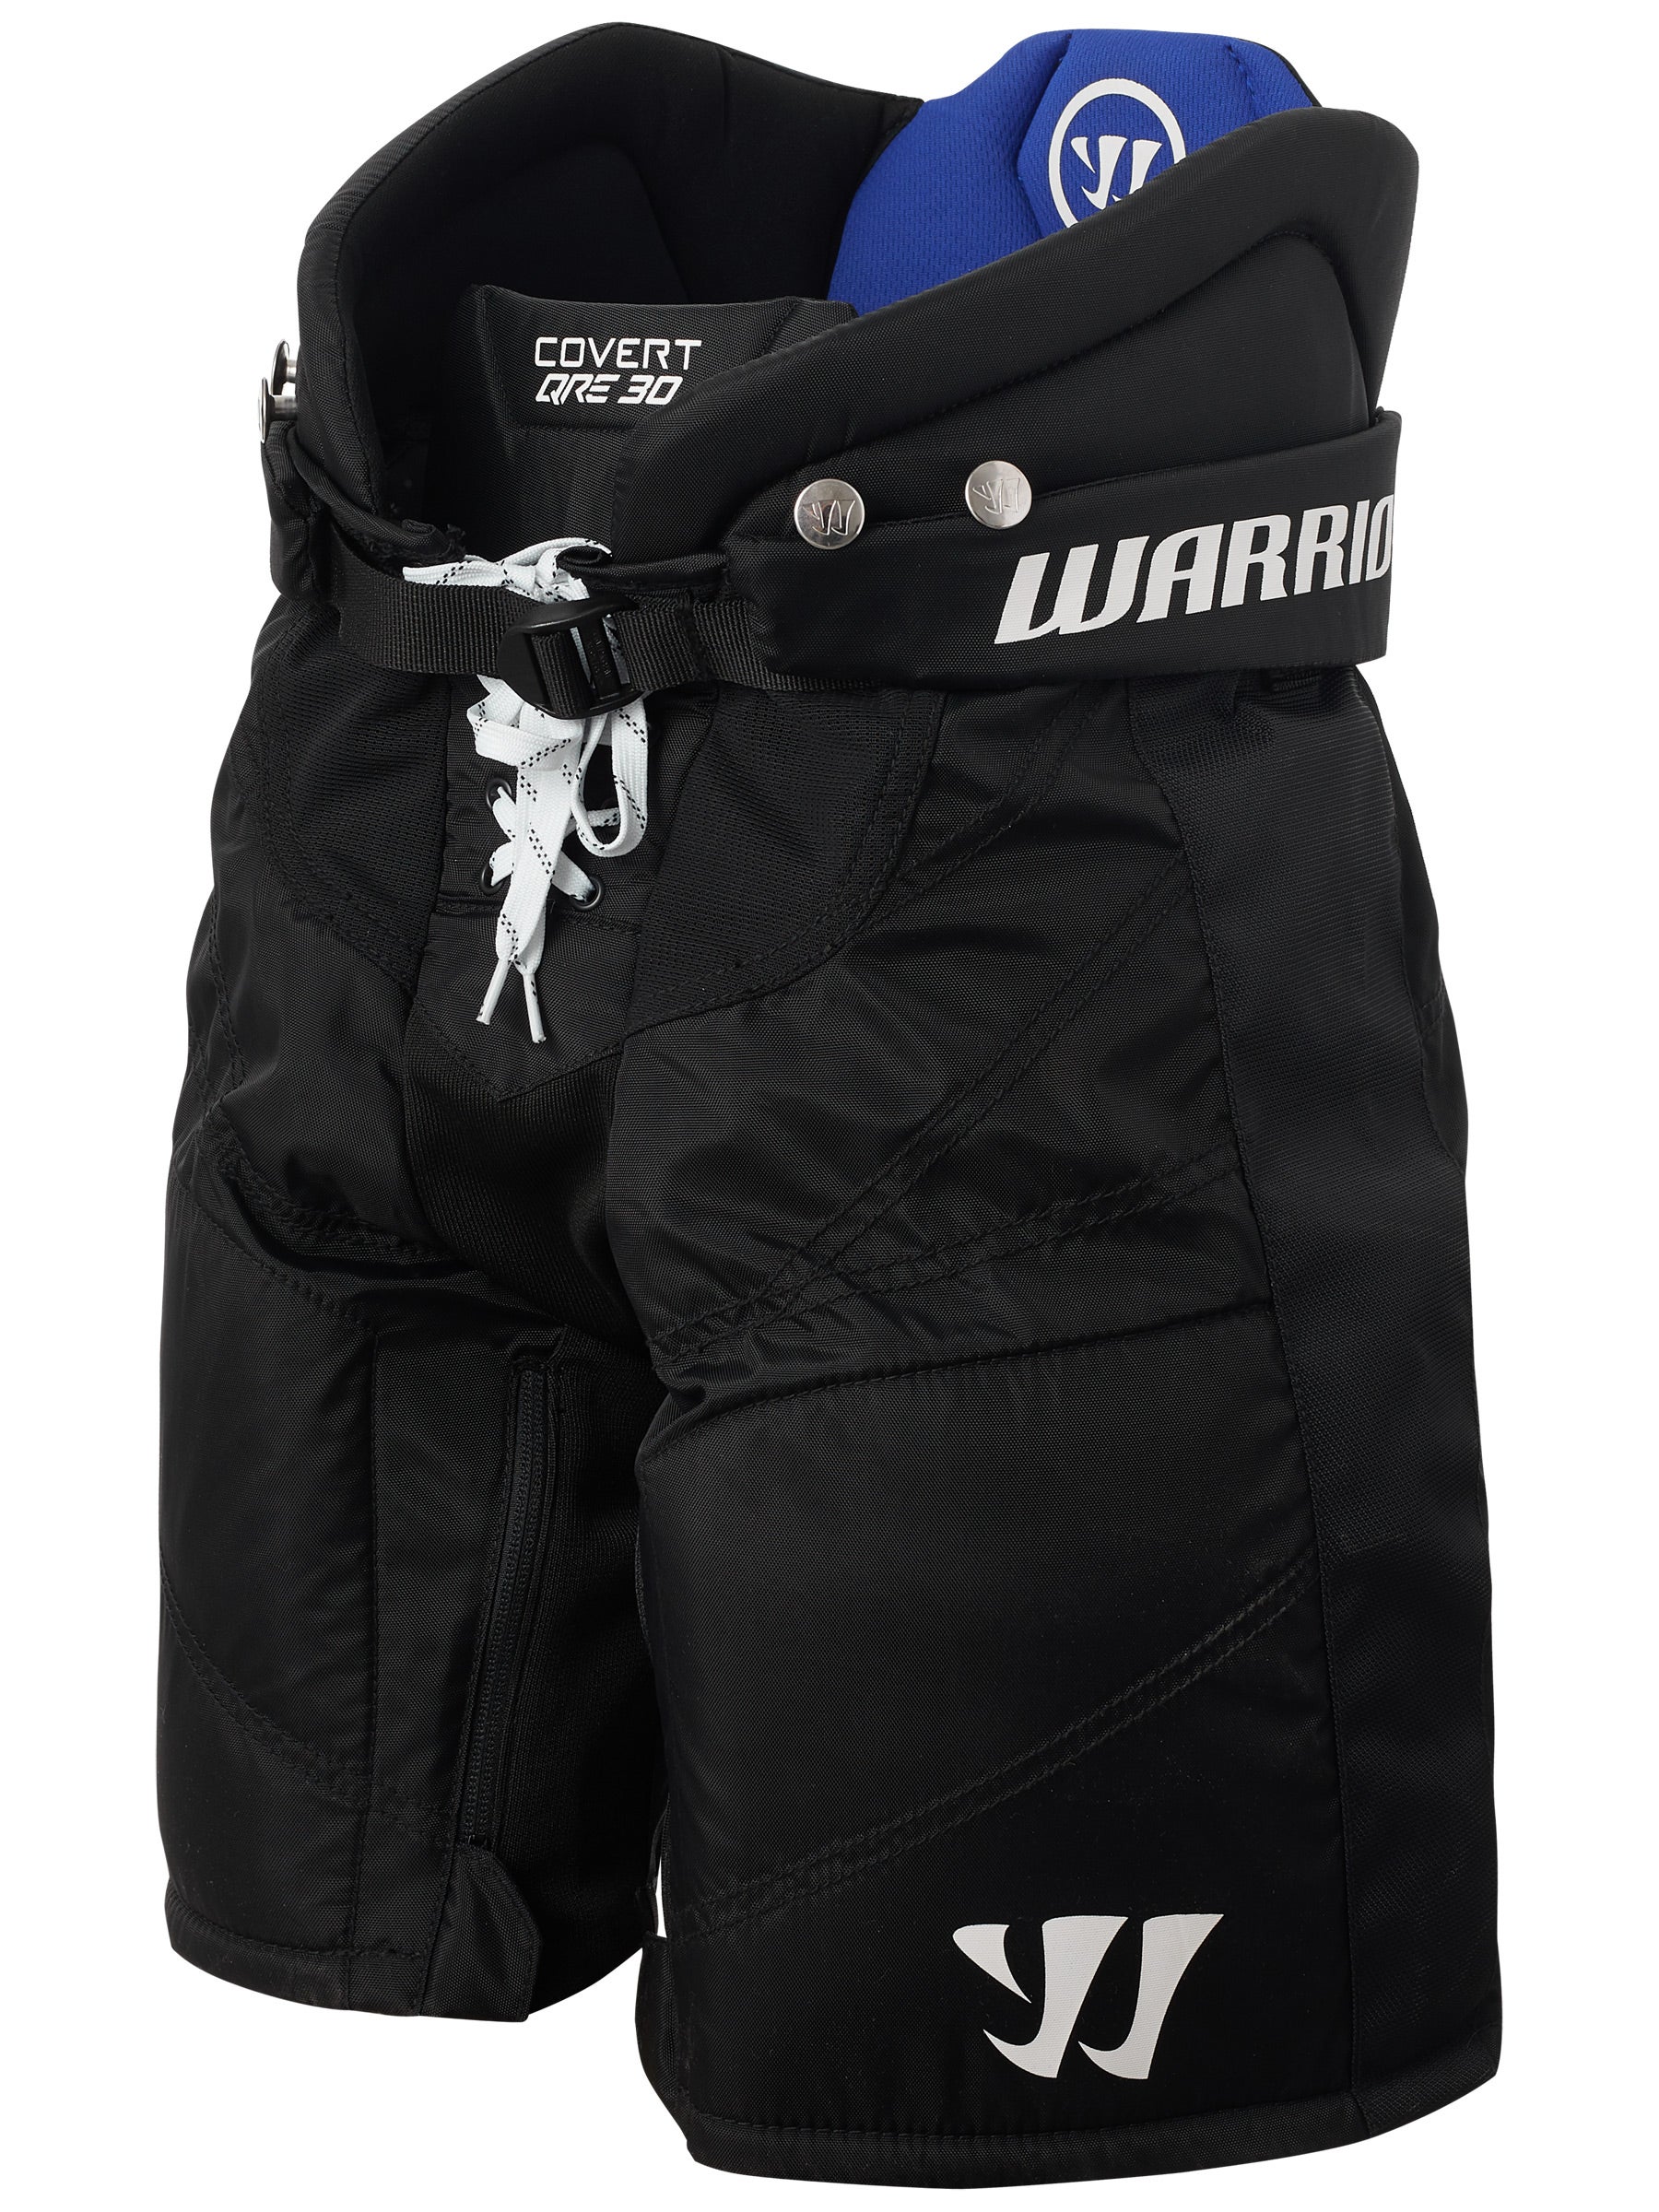 New Warrior Covert QRL3 Ice Hockey Player Pants senior Large Black equipment sr 